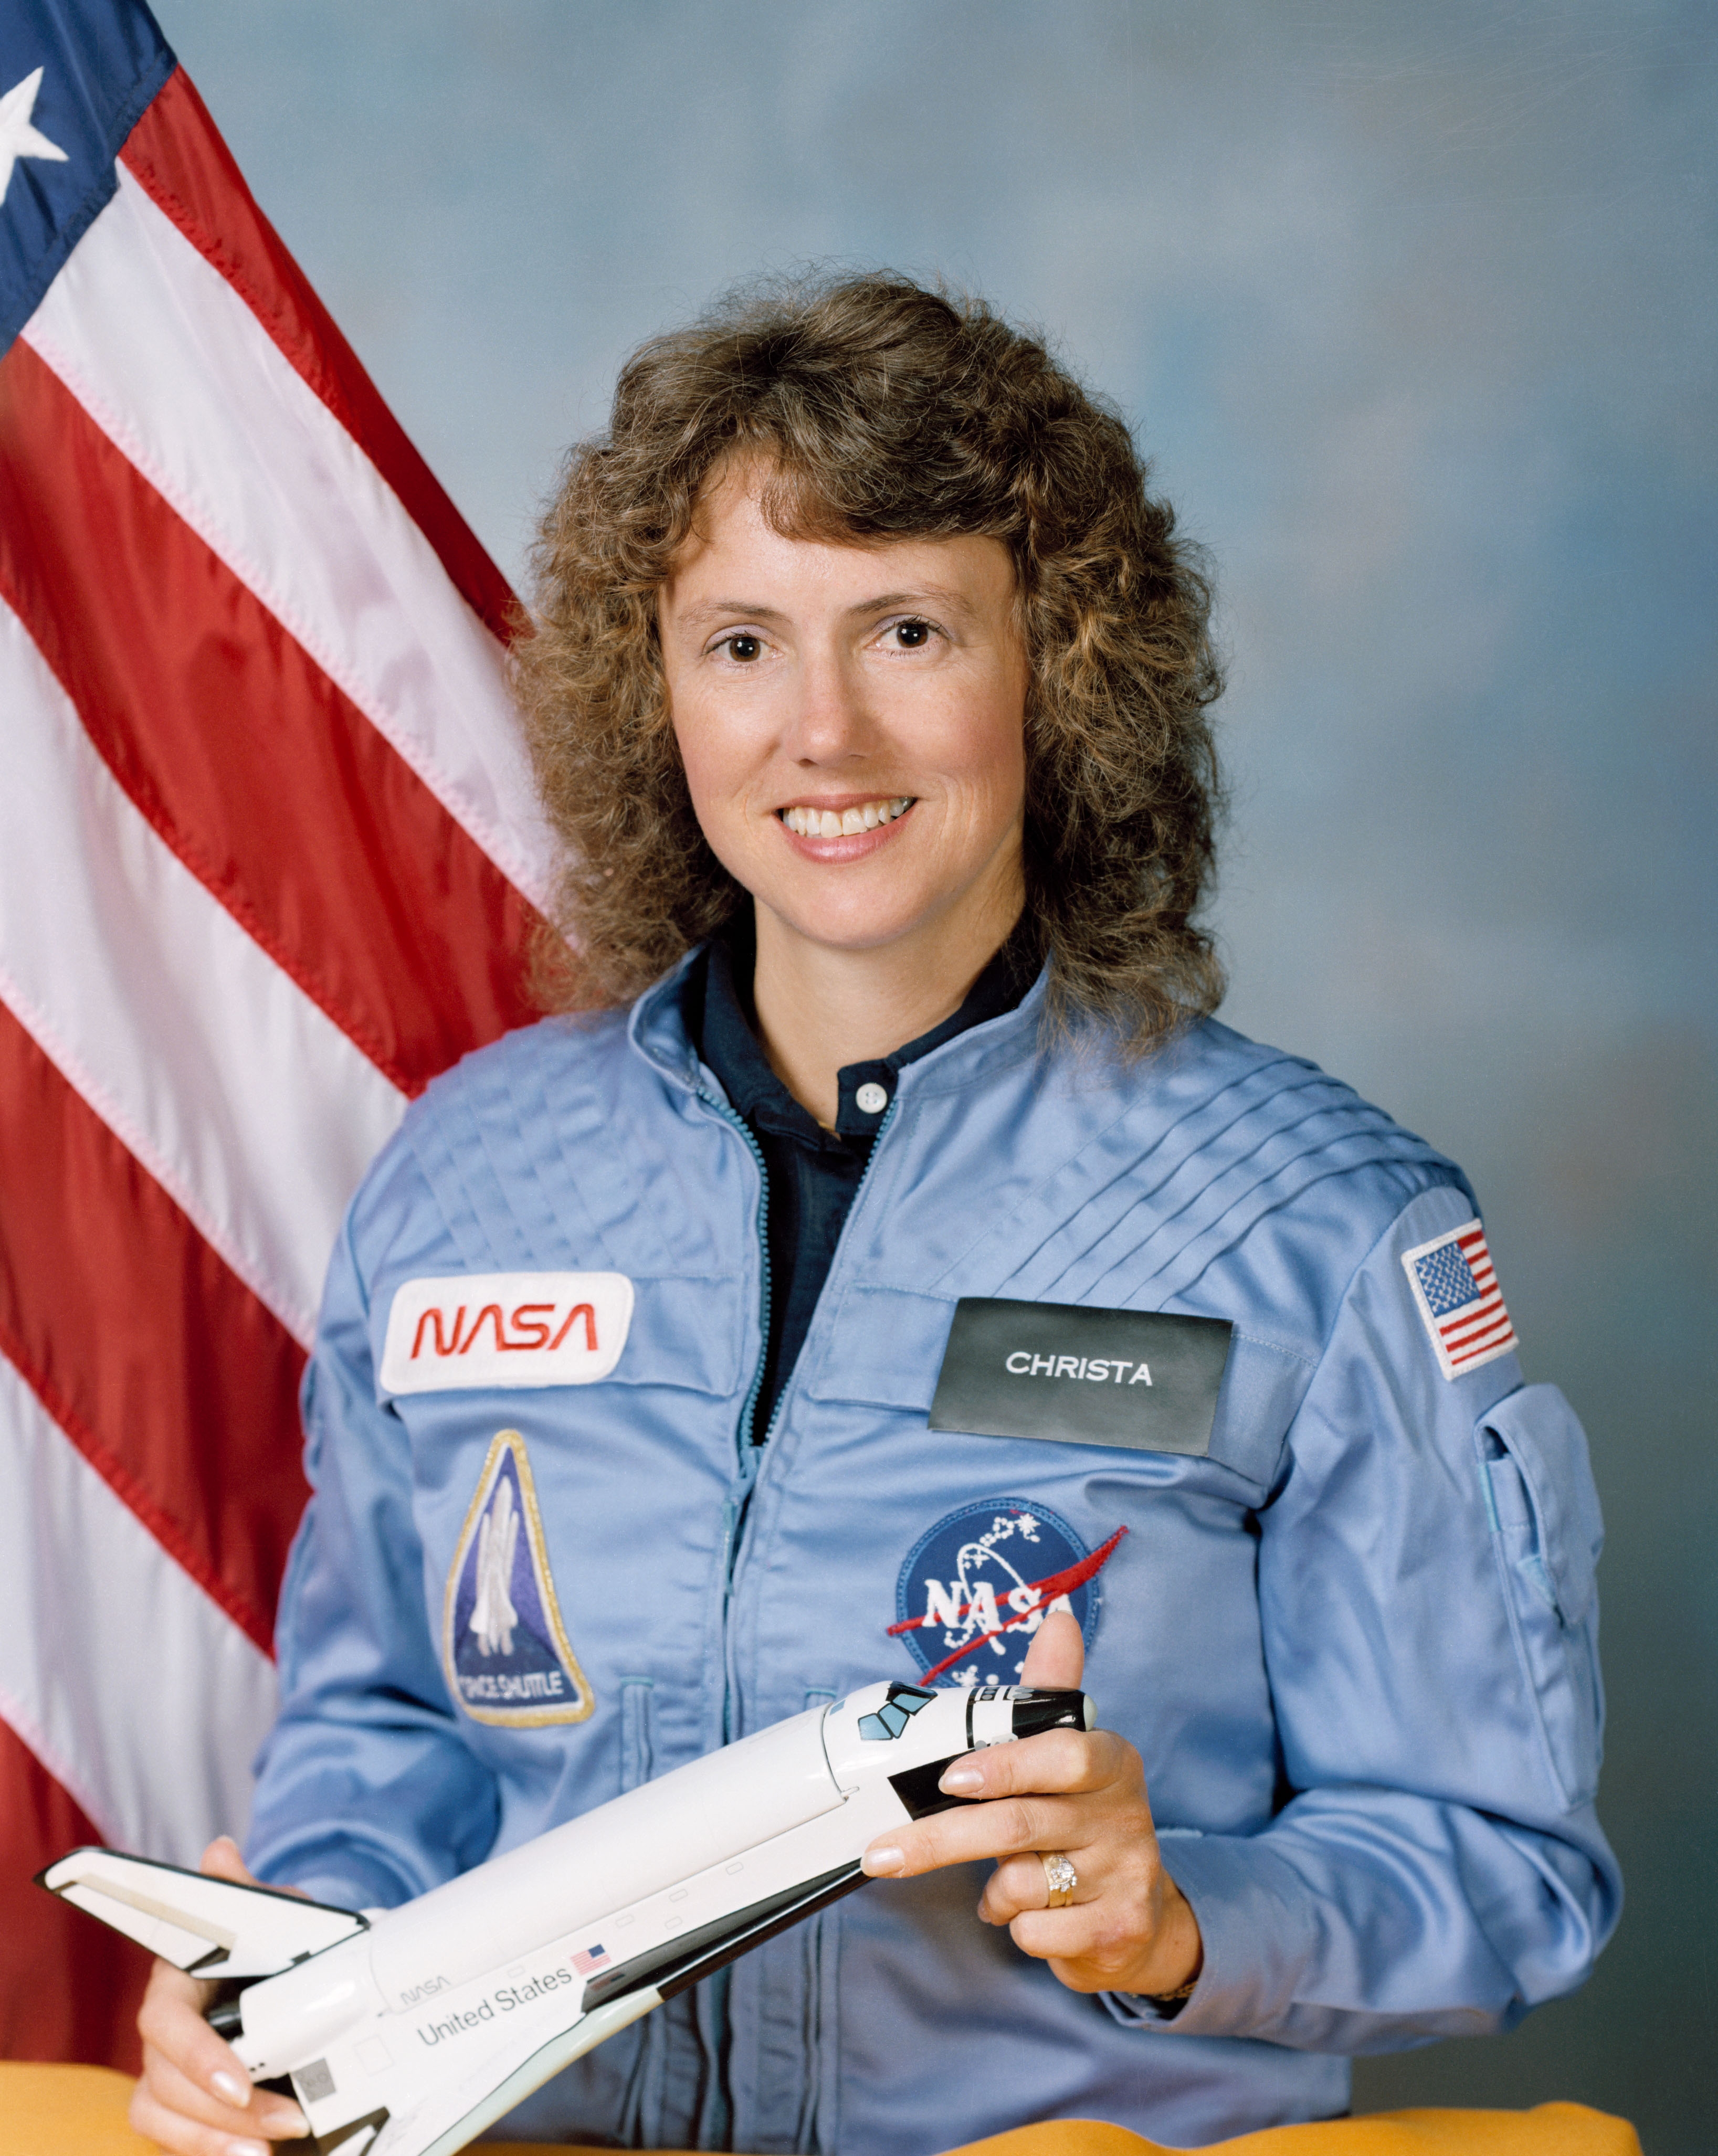 auteur Christa McAuliffe de la citation Le président a estimé qu'il était important d'envoyer un citoyen ordinaire pour vivre l'excitation des voyages spatiaux en tant que représentant de tous les Américains.